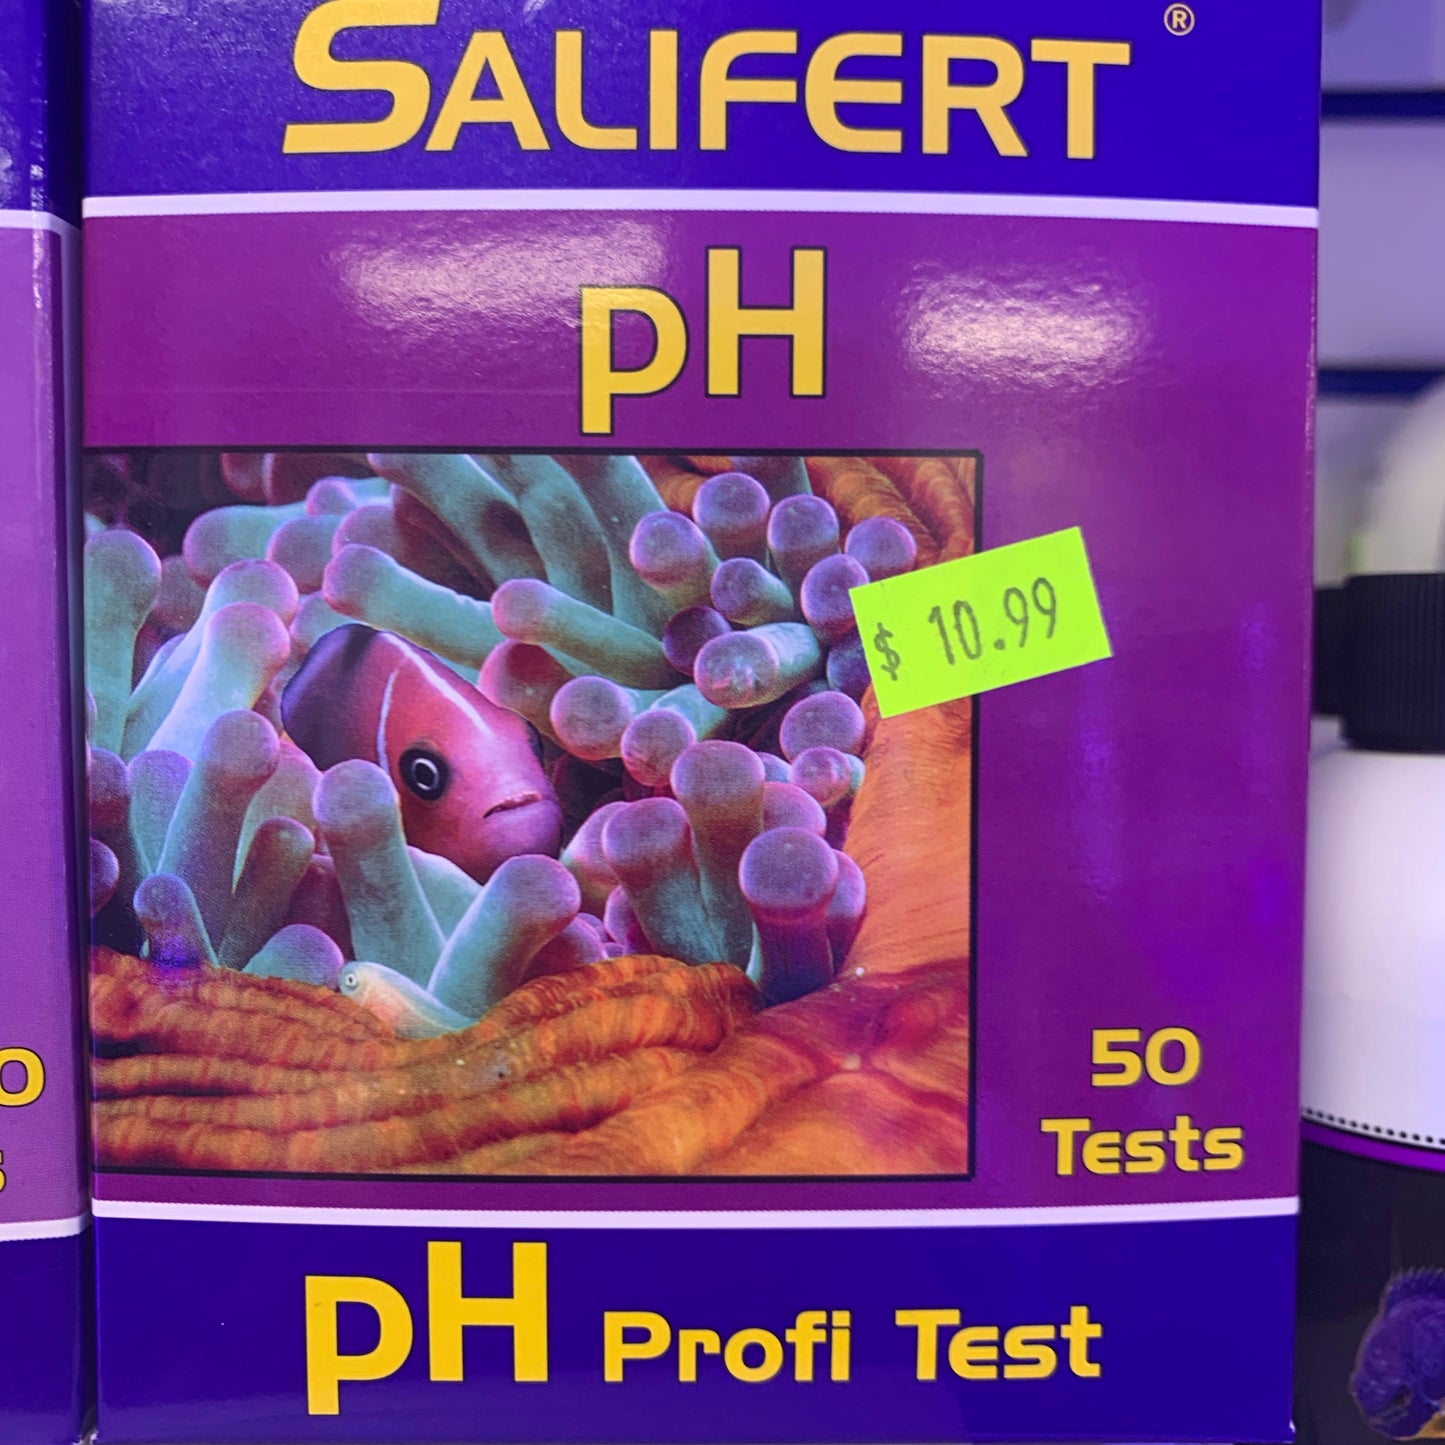 Salifert Test Kits